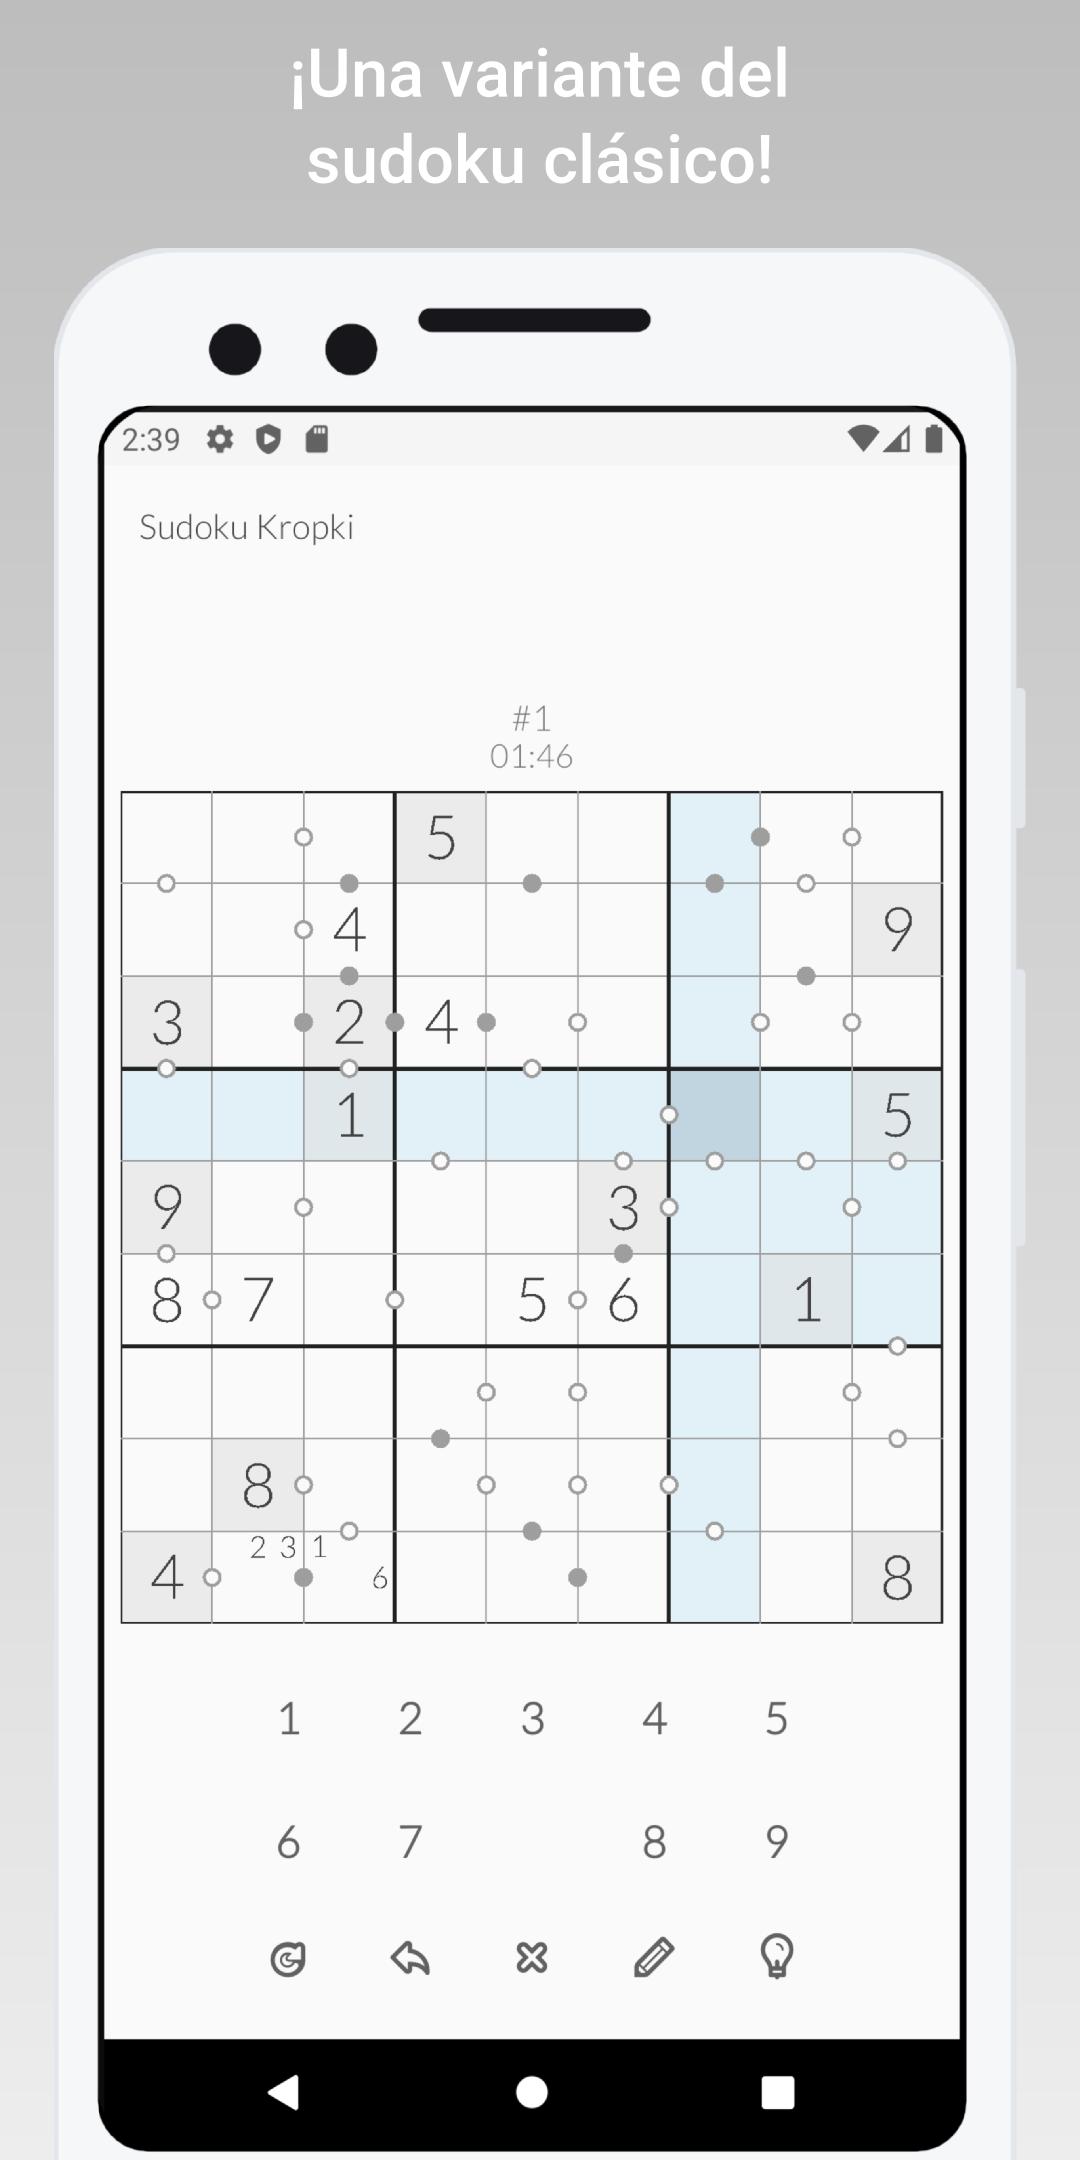 de de kropki - sudoku, juego rompezabezas para Android